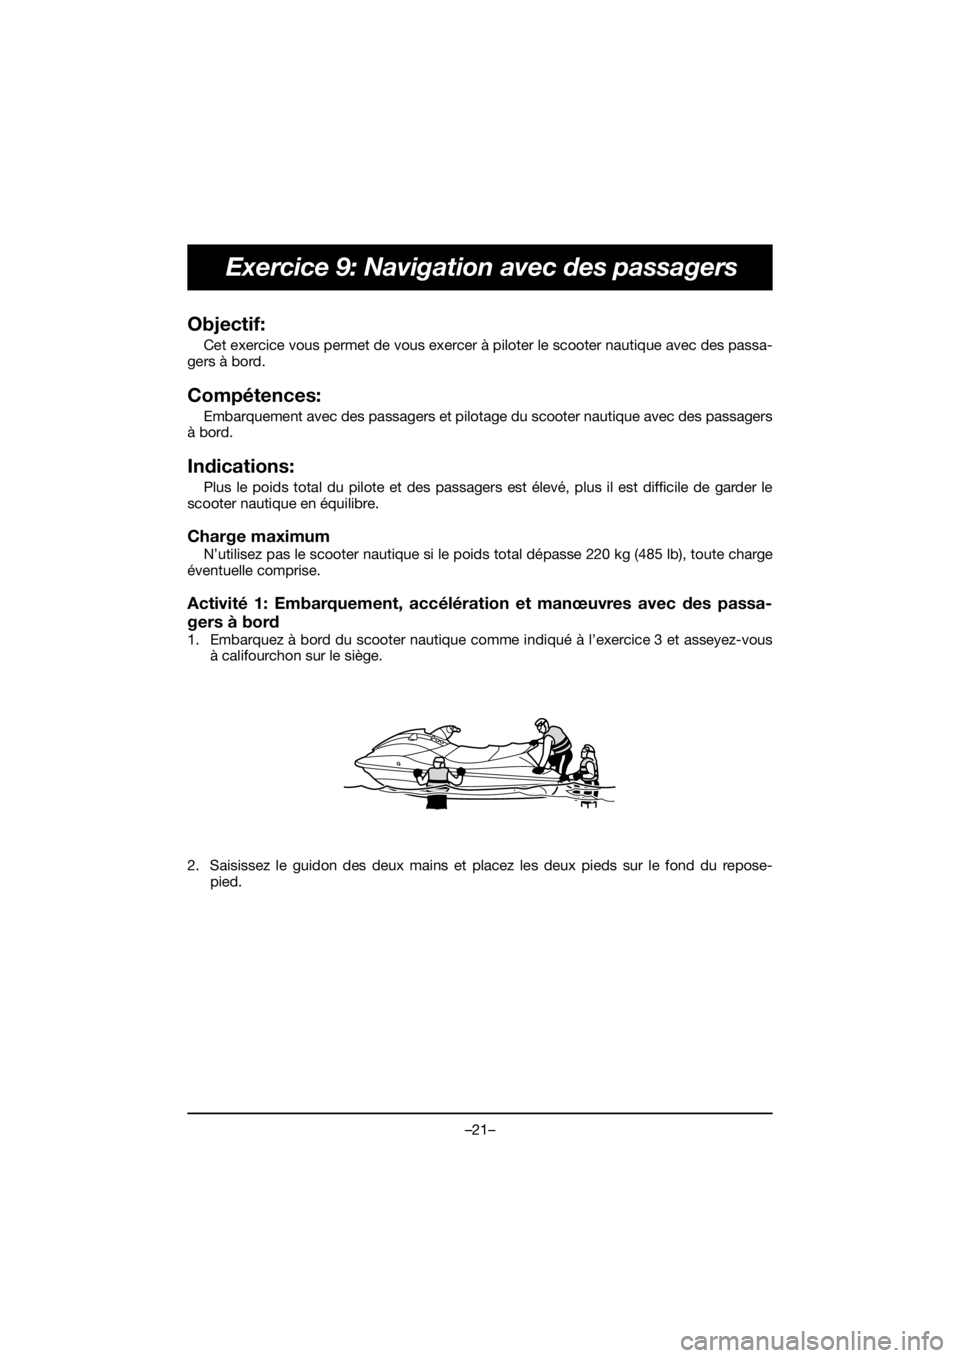 YAMAHA EX SPORT 2020  Manuale duso (in Italian) –21–
Exercice 9: Navigation avec des passagers
Objectif: 
Cet exercice vous permet de vous exercer à piloter le scooter nautique avec des passa-
gers à bord.
Compétences: 
Embarquement avec des